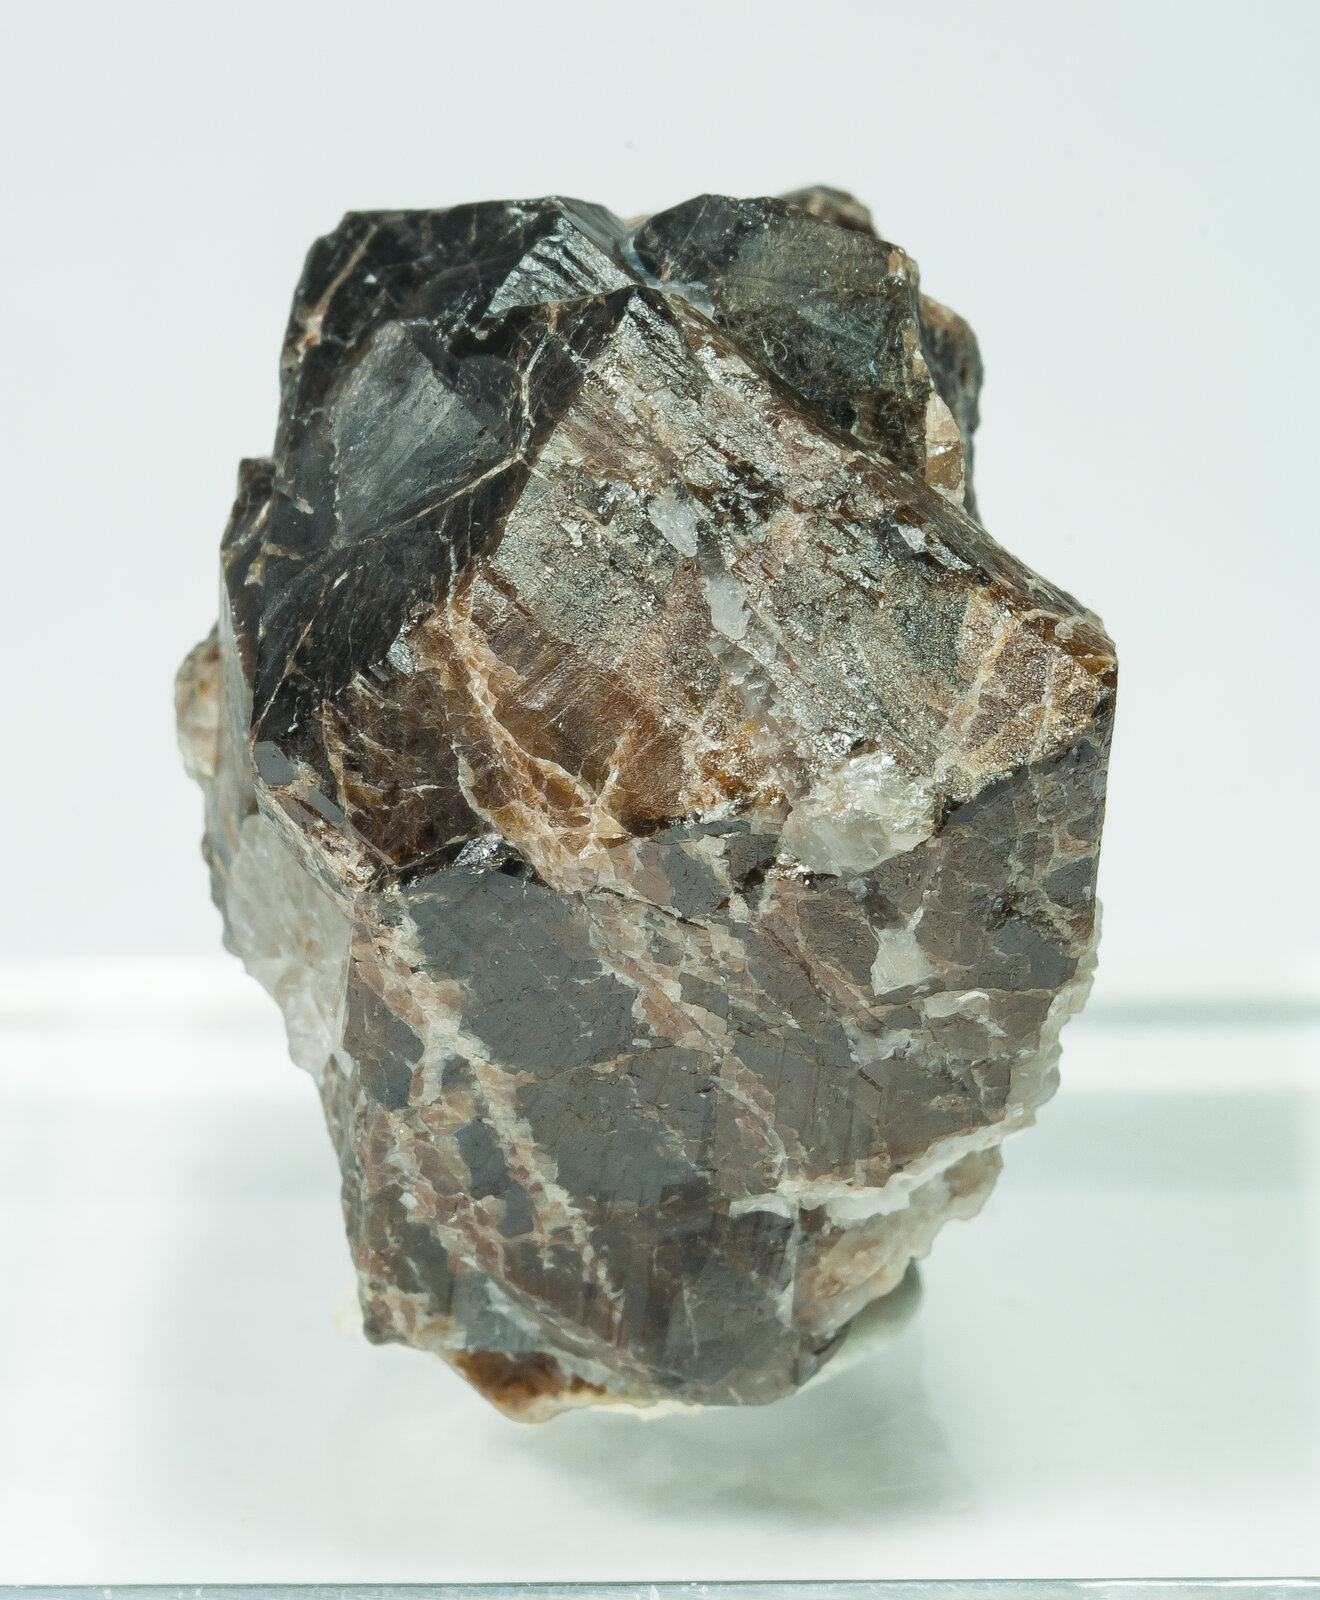 specimens/s_imagesAP5/Cassiterite-TXH46AP5f.jpg